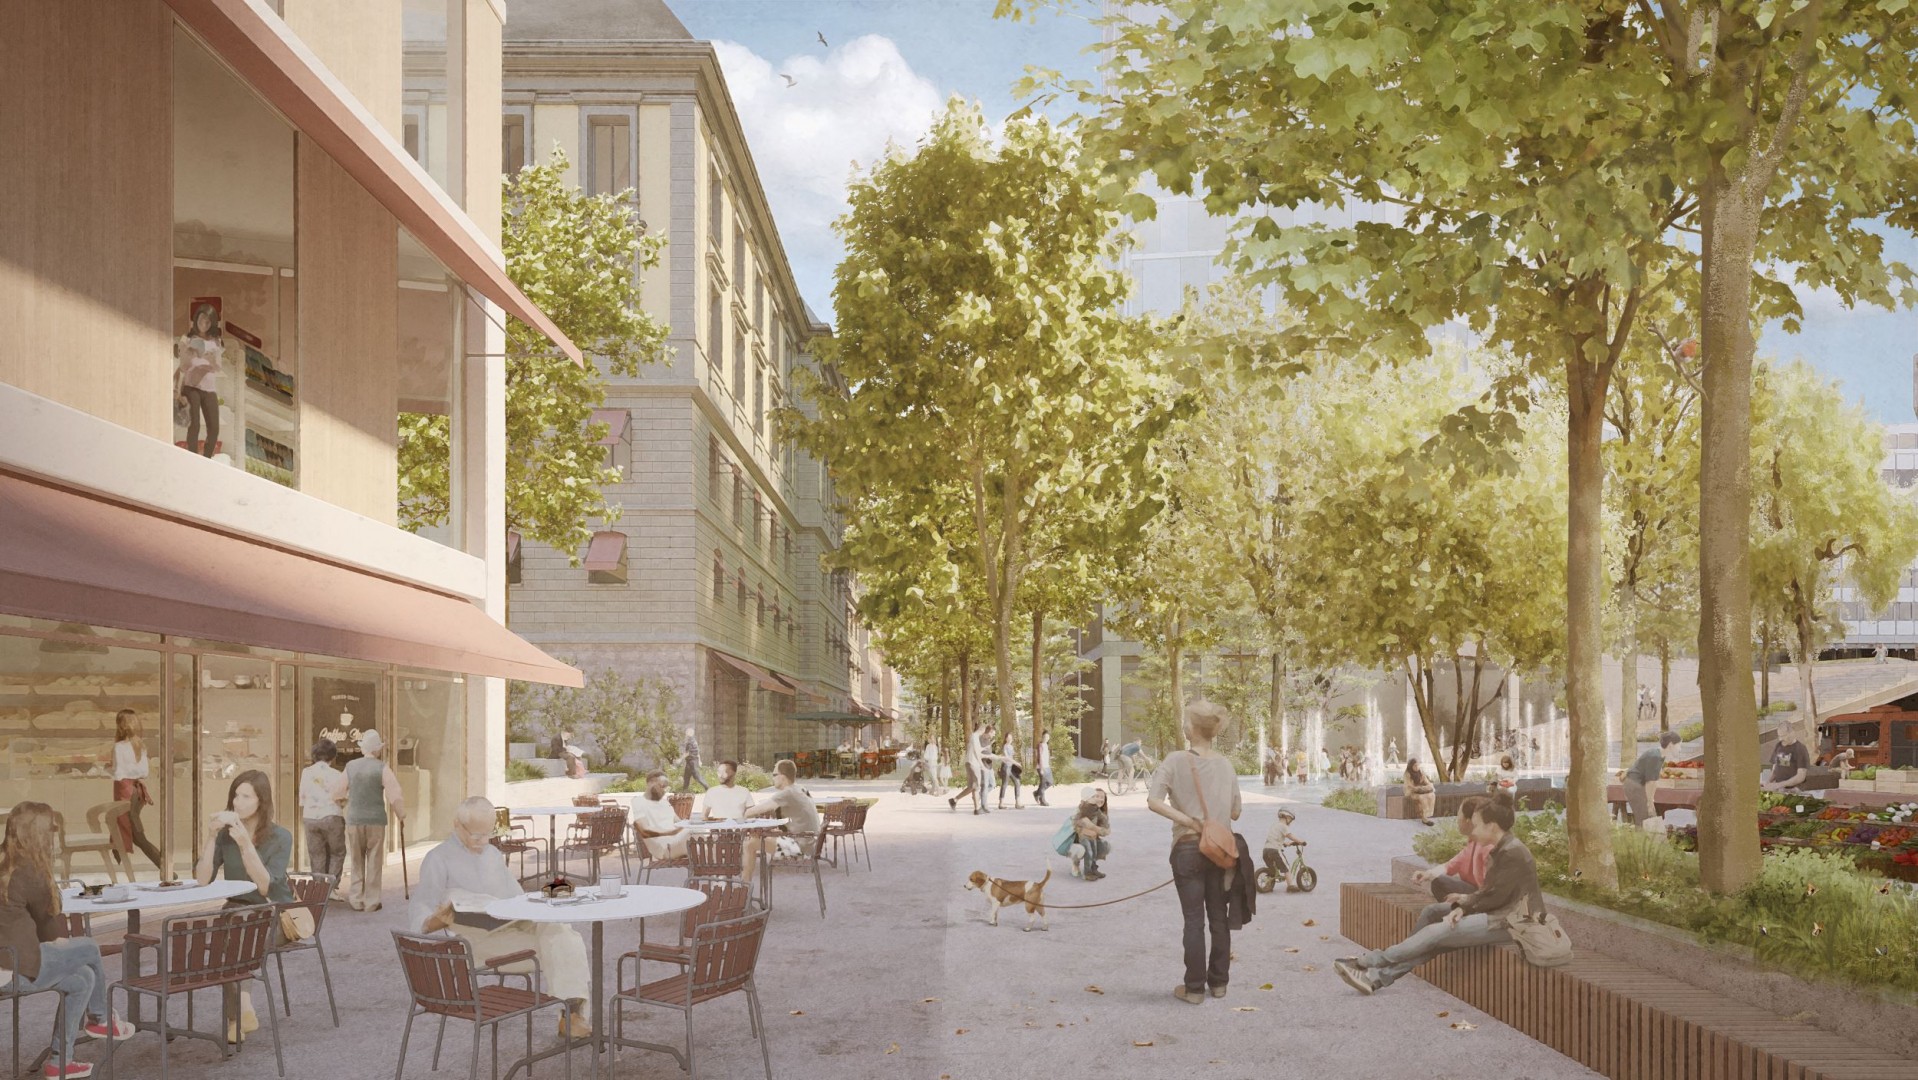 À deux pas de la gare, le futur Quartier de la Rasude proposera bientôt un nouveau lieu de vie moderne et durable au cœur de la ville.